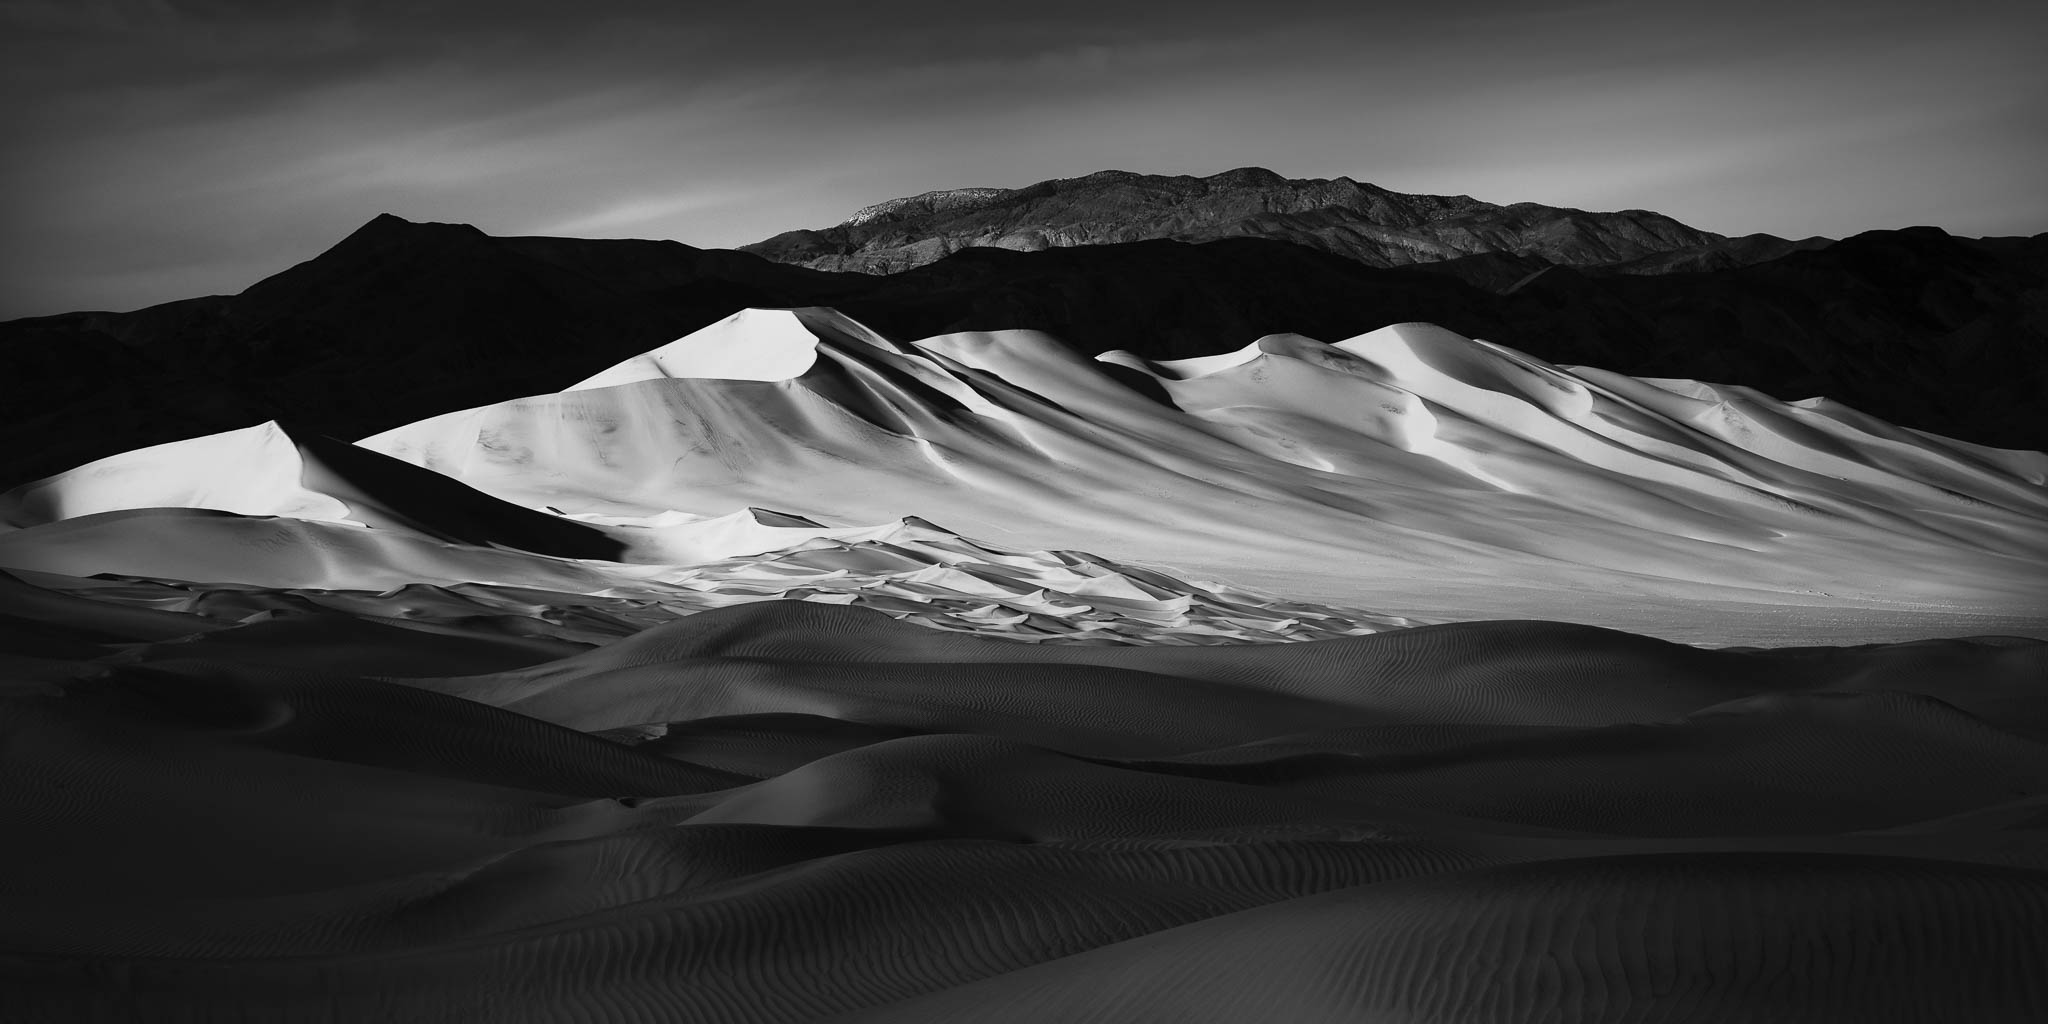 california, death valley national park, desert, eureka dunes, mojave desert